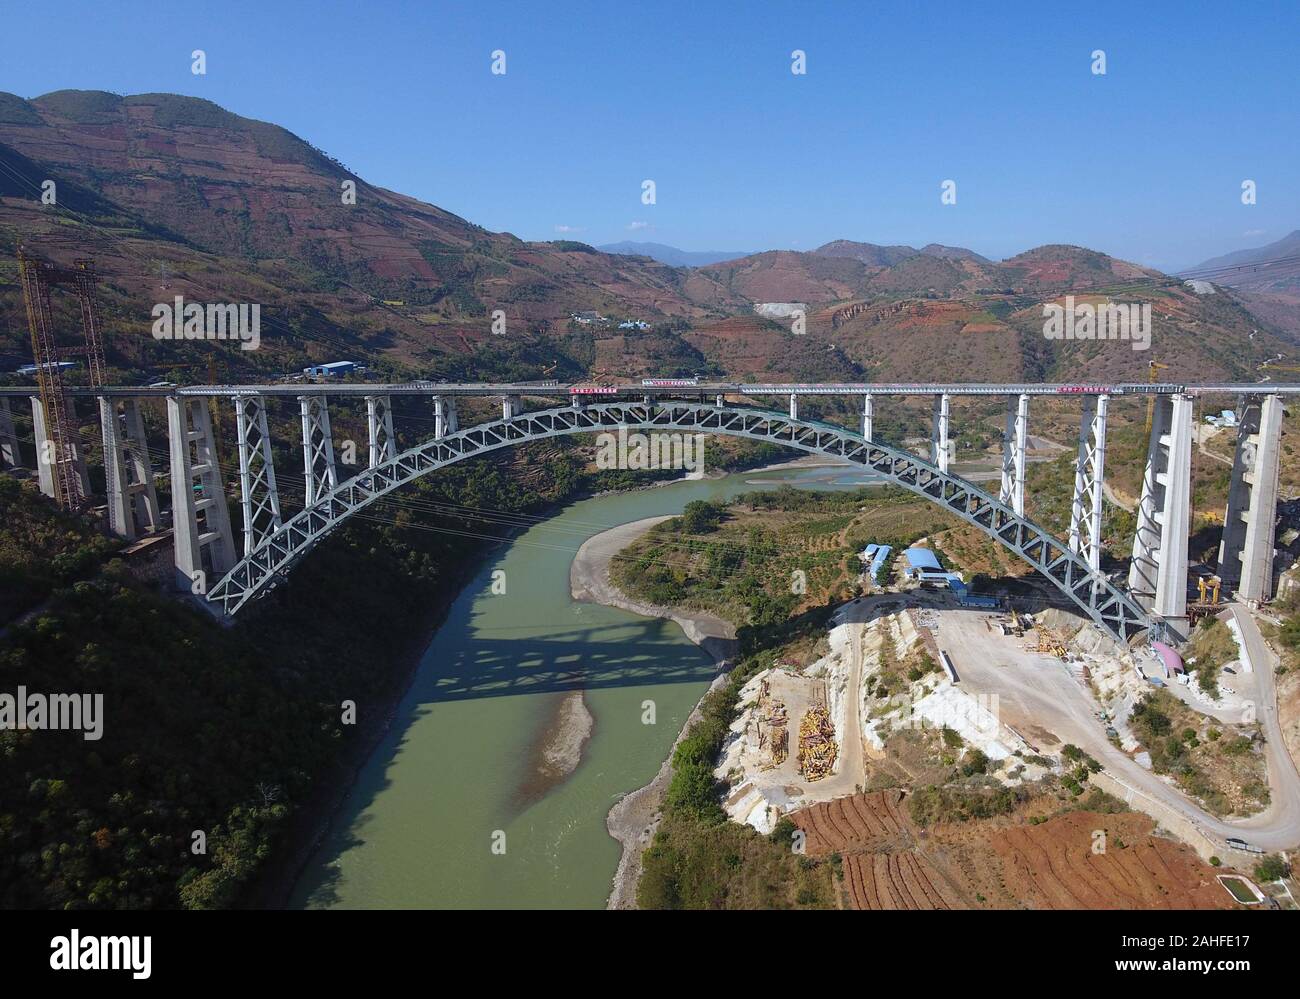 Baoshan, China. 29 Dez, 2019. Luftbild am Dez. 29, 2019 zeigt die Bogenbrücke des Dali-Ruili Eisenbahn über nujiang Fluss im Südwesten der chinesischen Provinz Yunnan. Der Hauptteil der Brücke wird am 04.12.30 abgeschlossen sein. Die Brücke ist die derzeit längste-spanning Eisenbahn Bogenbrücke mit einer Spannweite von 490 Meter. Credit: Yang Zongyou/Xinhua/Alamy leben Nachrichten Stockfoto